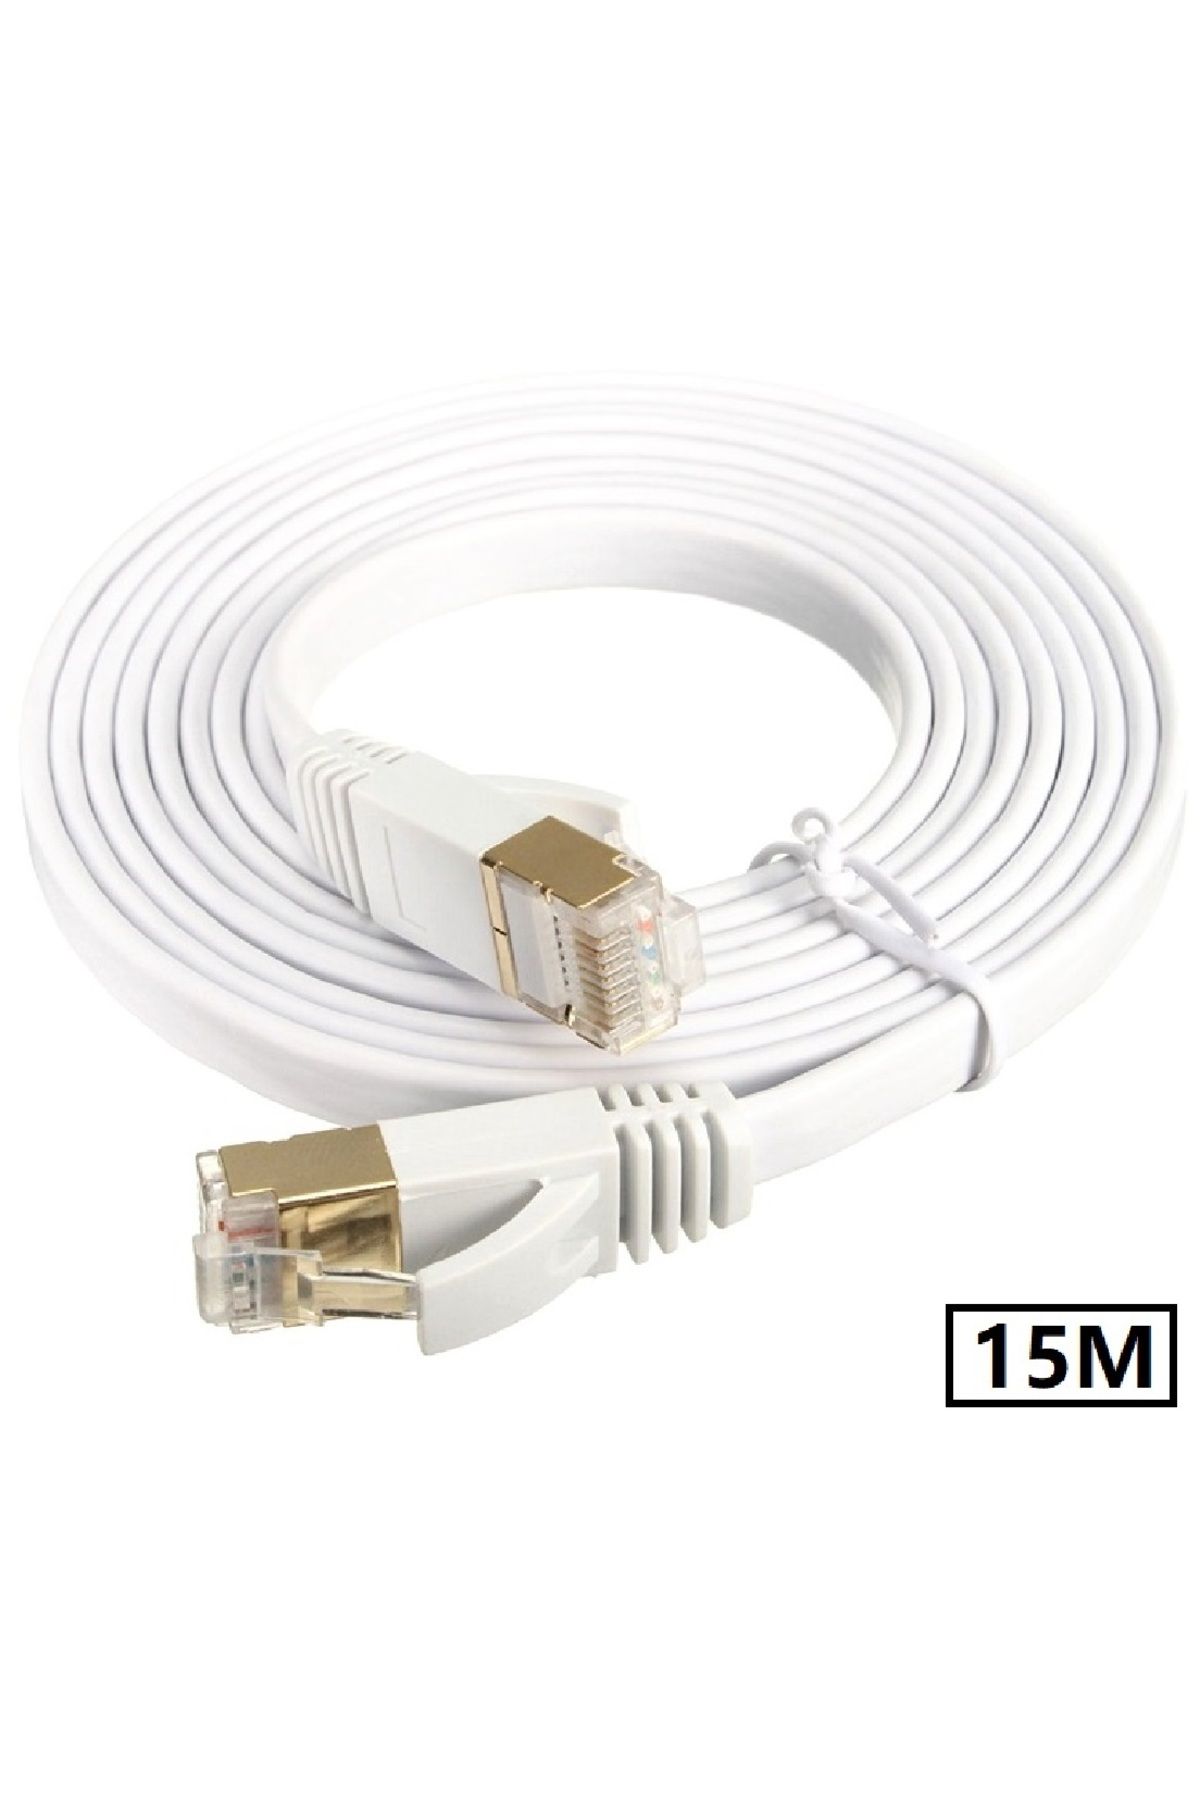 Alfais 4964 Cat7 Ethernet RJ45 600MHz 10GBPS Modem İnternet Kablosu 15 Metre